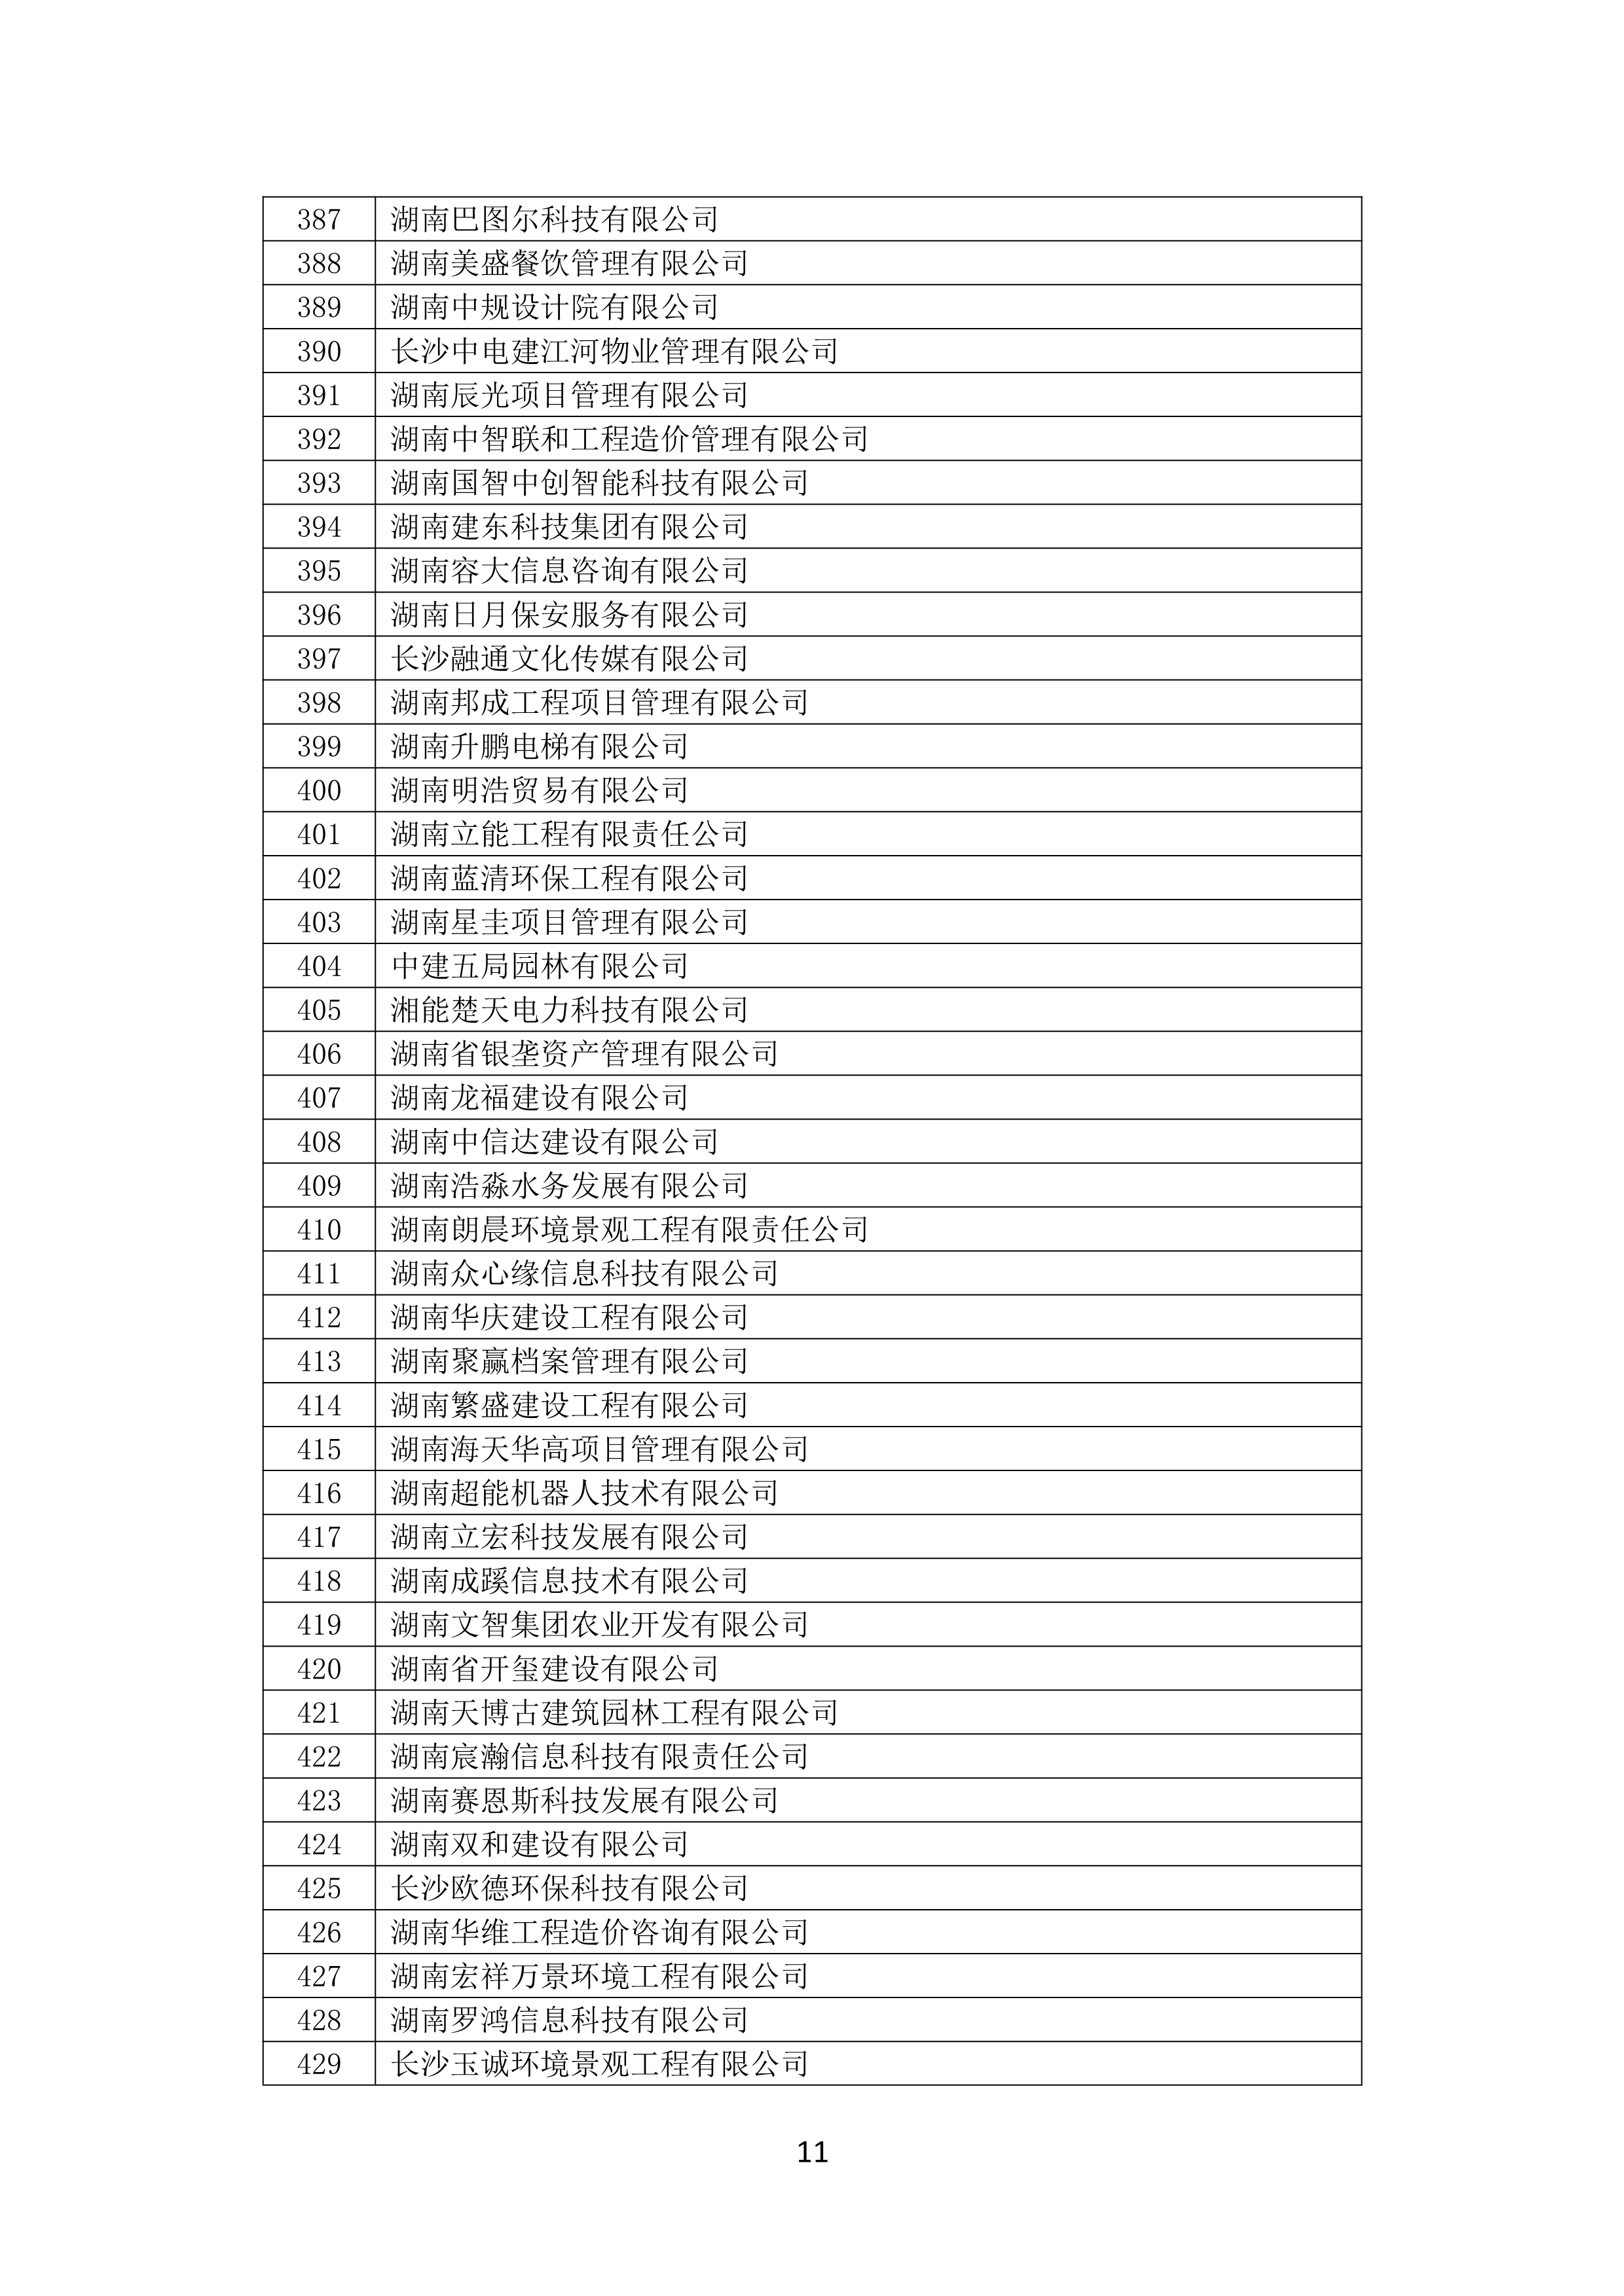 2021 年(nián)度湖南省守合同重信用企業名單_12.png